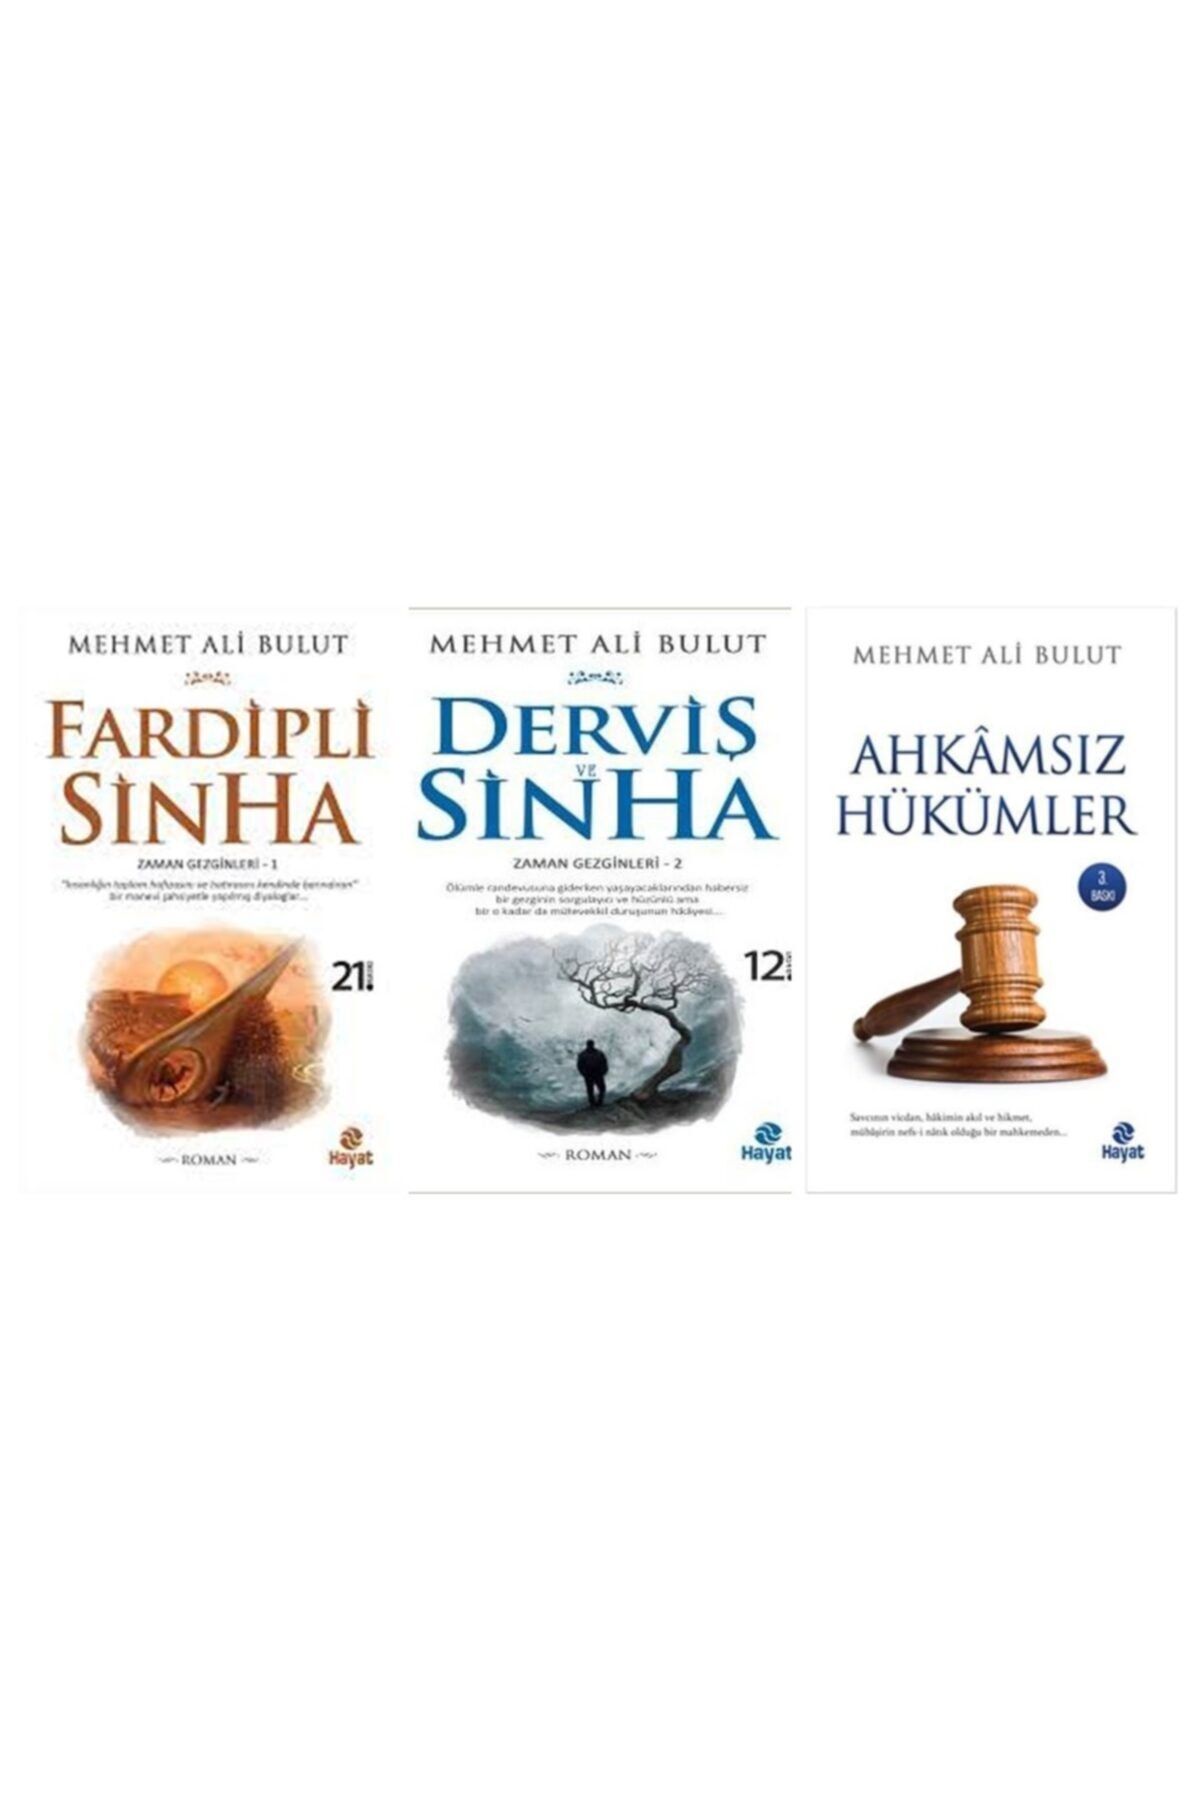 Hayat Yayınları Fardipli Sinha + Derviş Ve Sinha + Ahkamsız Hükümler M.ali Bulut 3 Kitap Saadetkitap